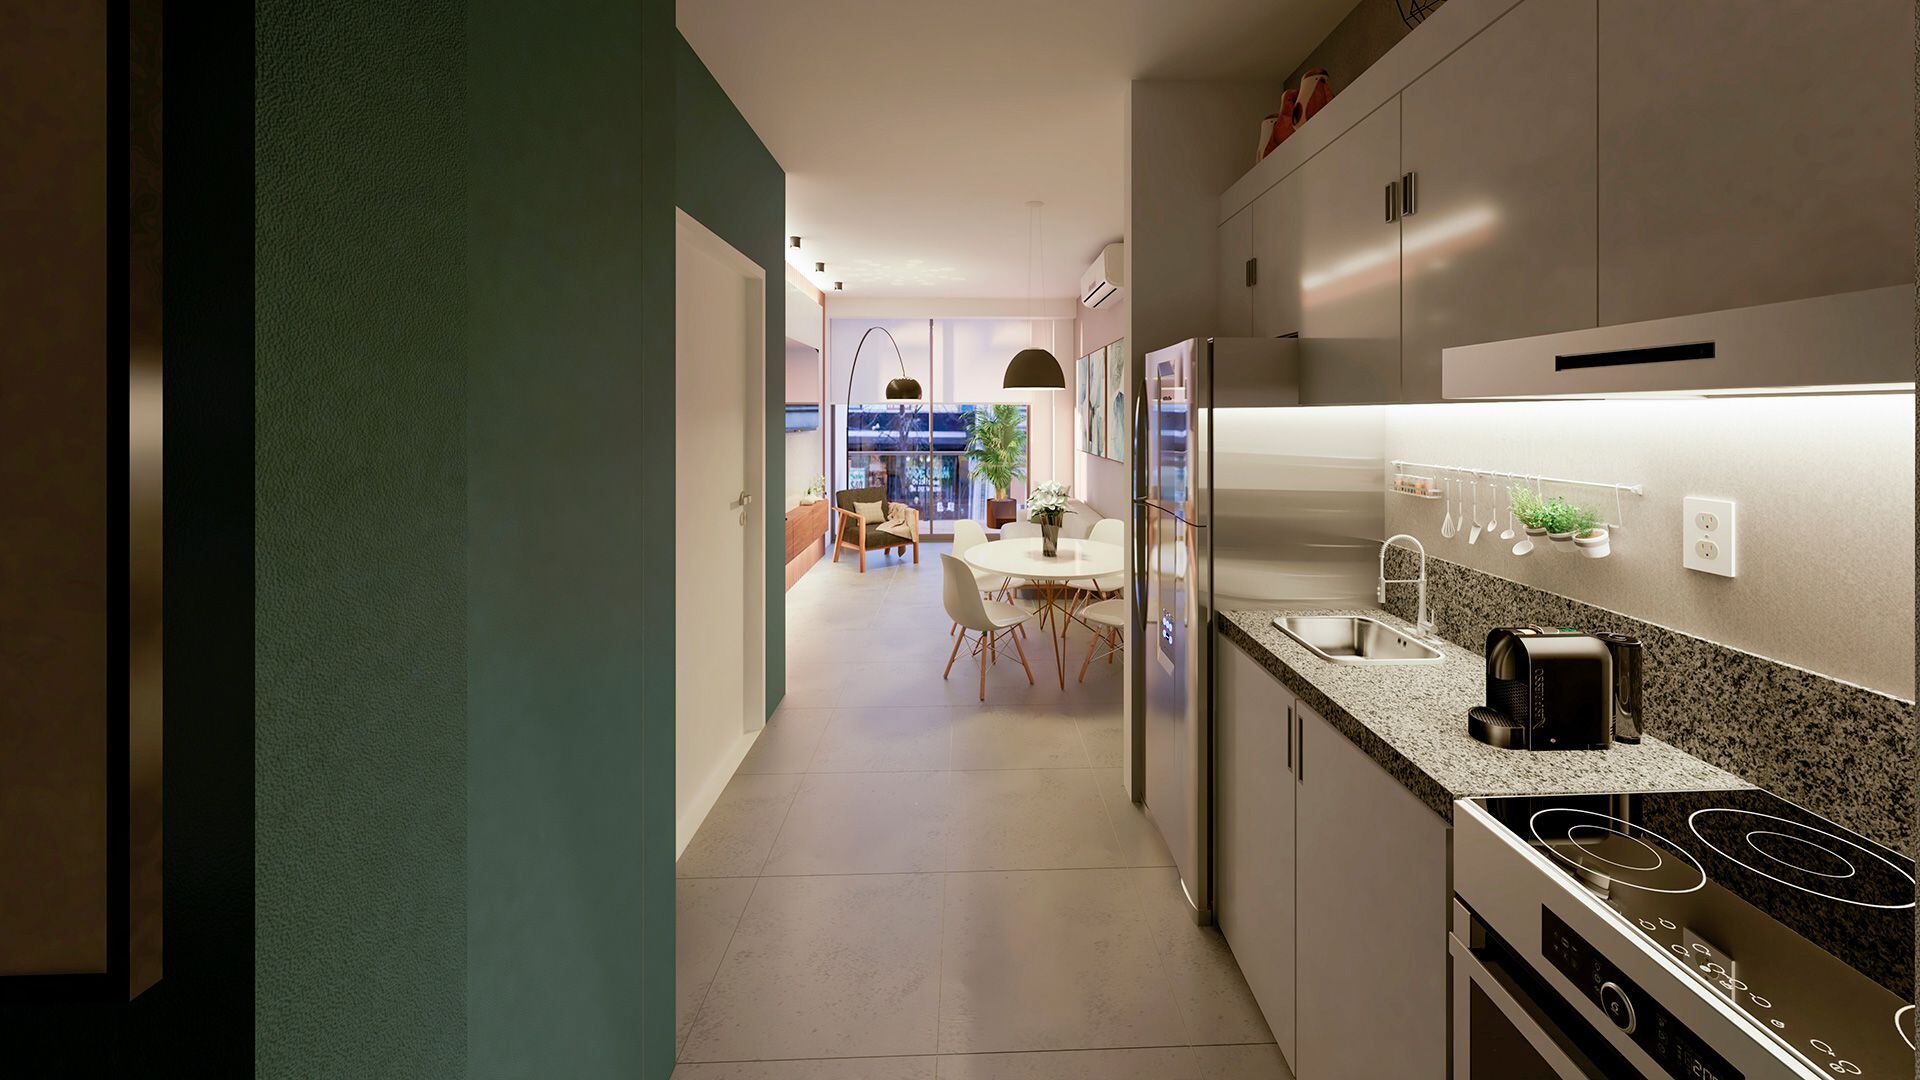 Cocinas modernas anexadas con comedor y living en algunos casos son parte del diseño que se emplea actualmente en las viviendas